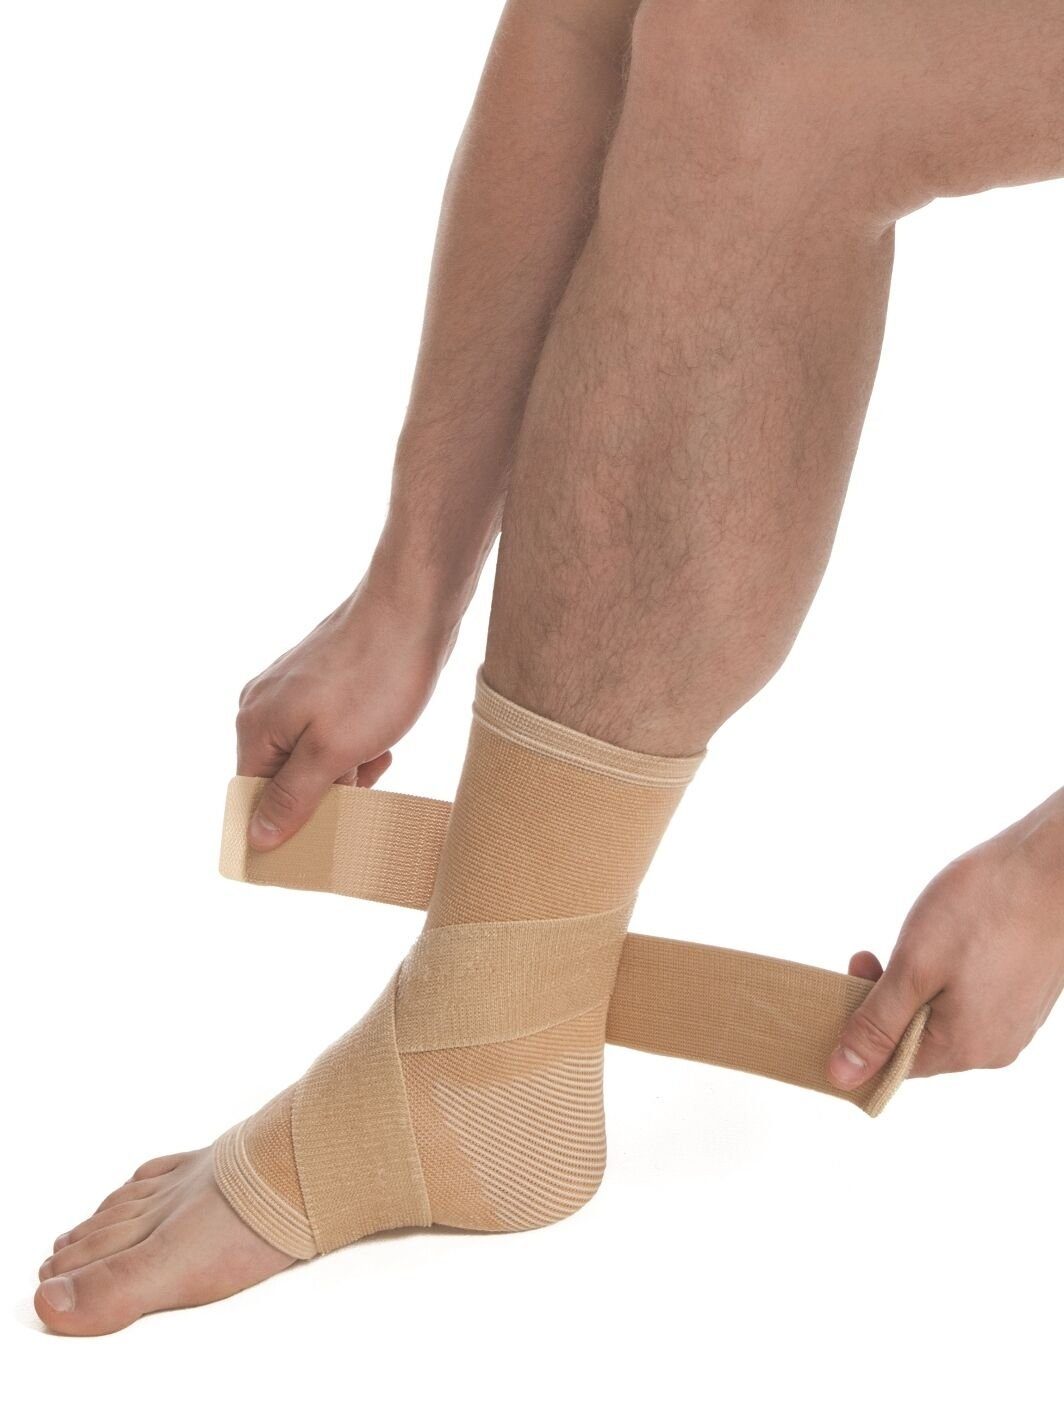 MedTex Fußbandage Bandage Kompression Fuß Fixierung 7025, Sprunggelenk Kompression Strumpf